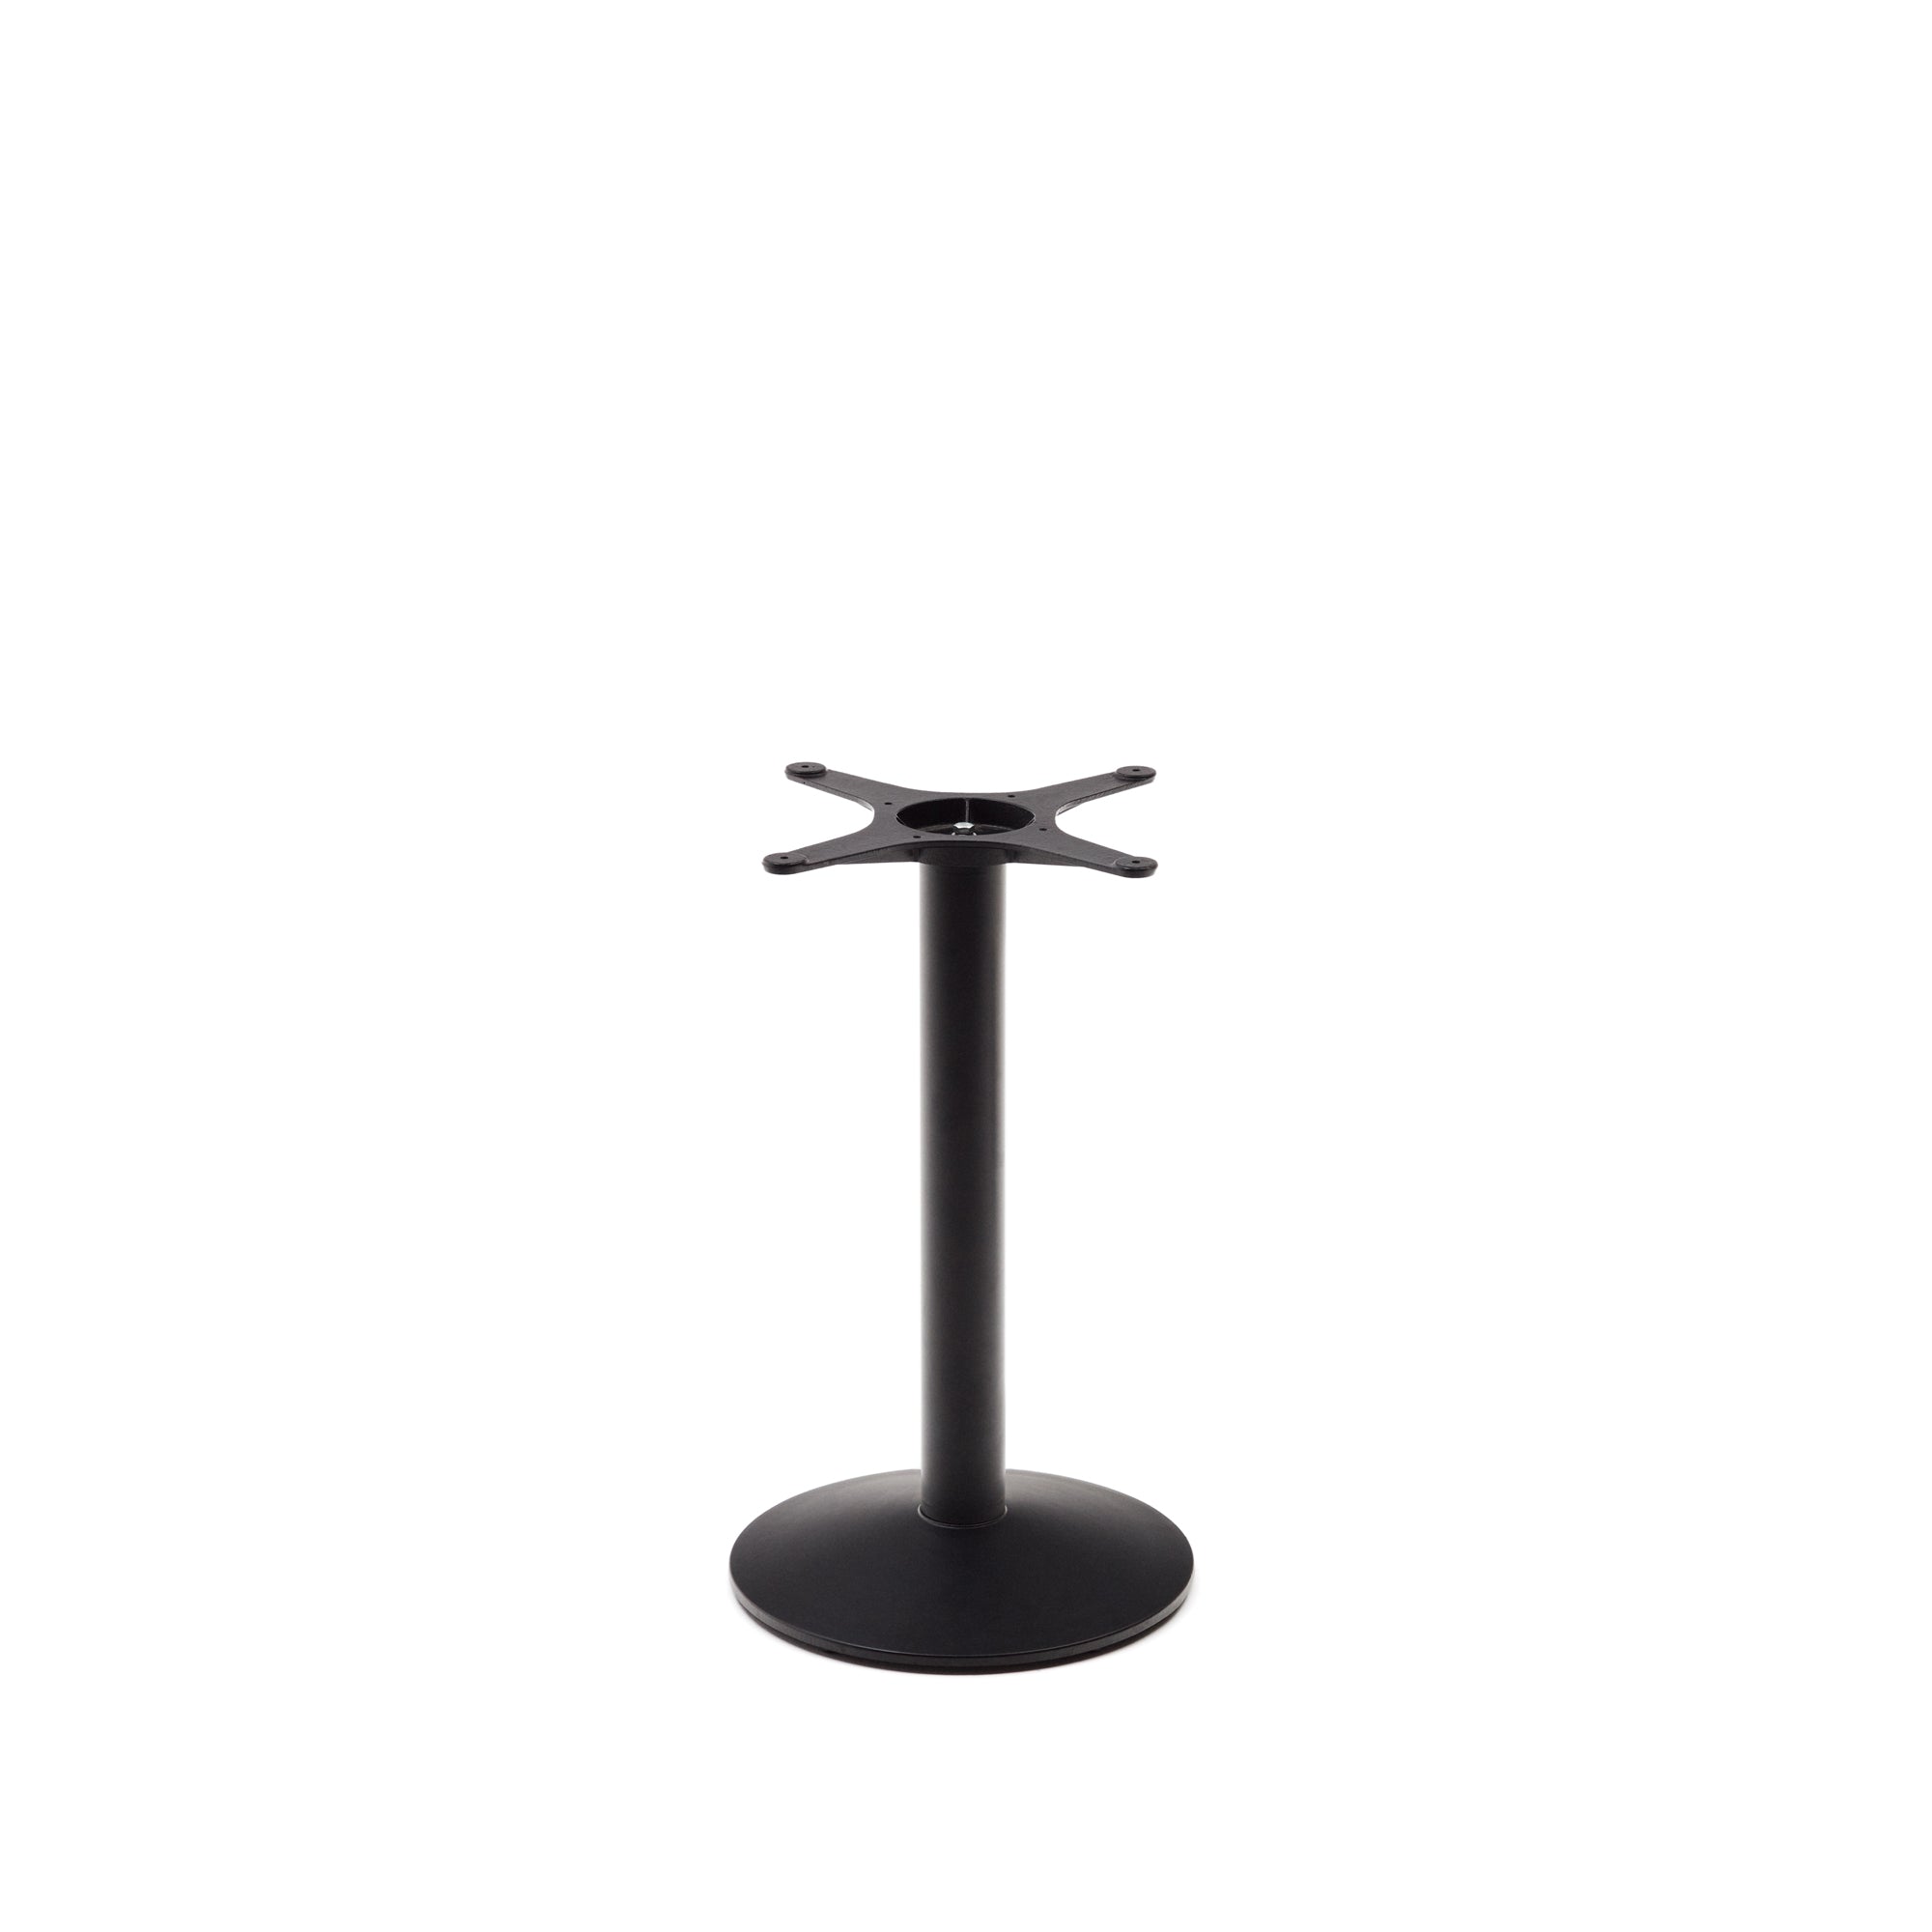 Esilda bárasztal láb kis kerek fém talppal, fekete színű festett kivitelben